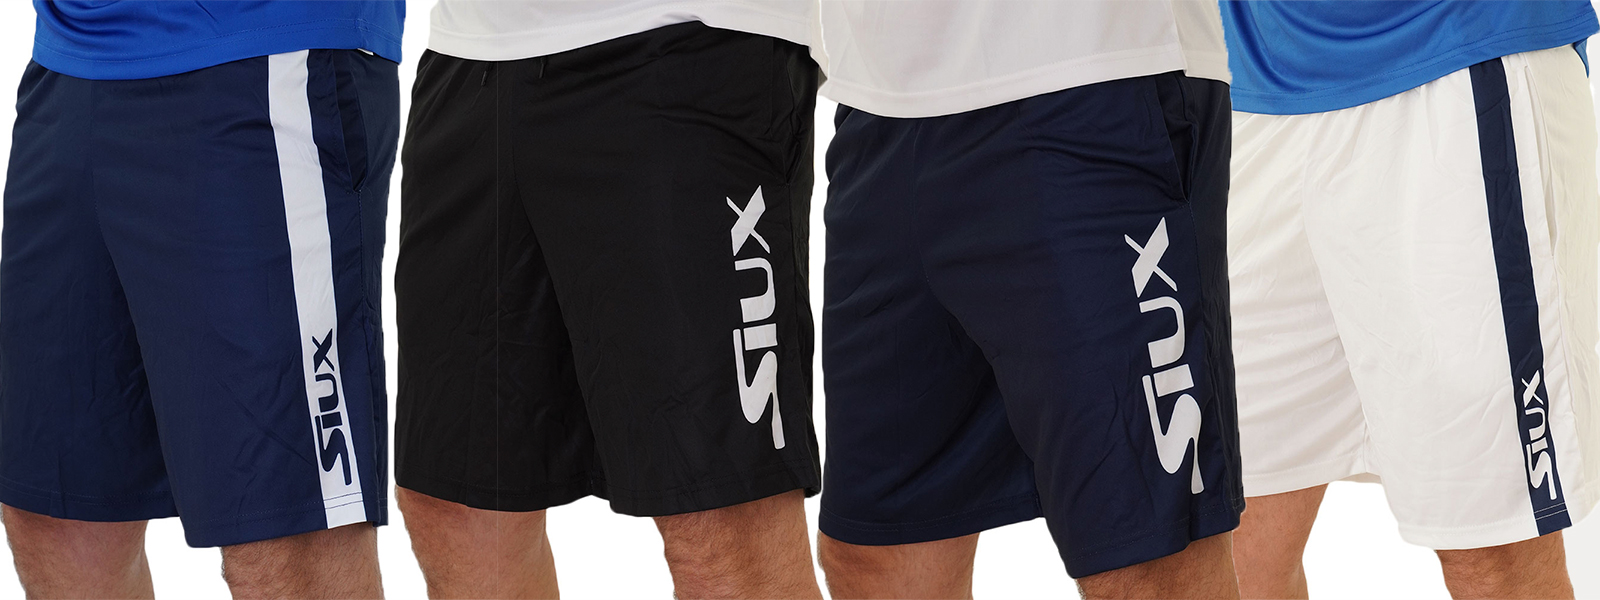 Shorts nuevos del textil Siux 2021